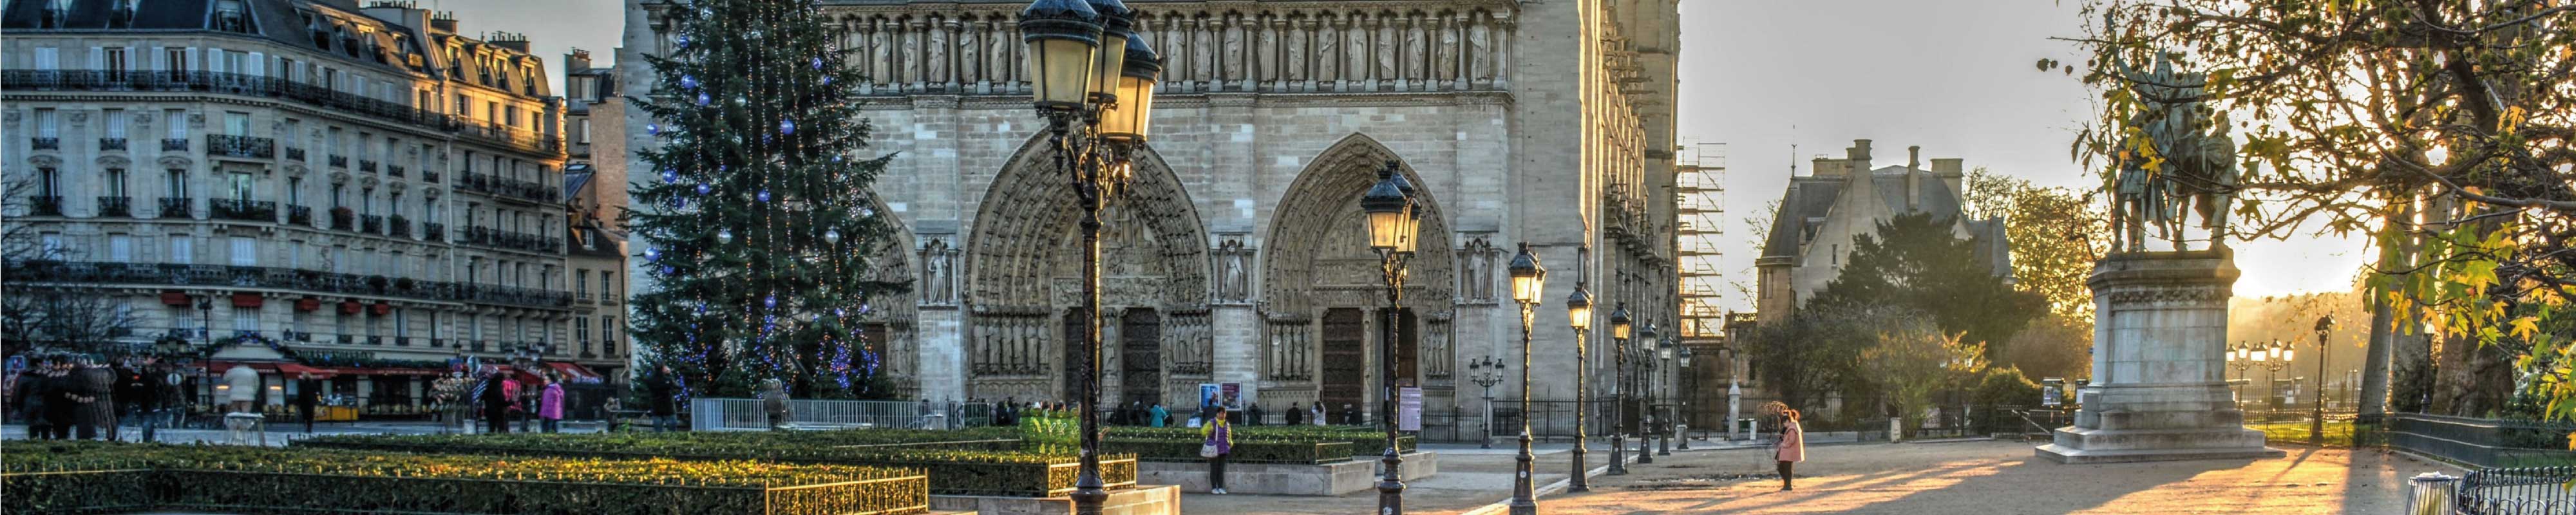 Consigne Bagage | Notre Dame à Paris - Nannybag